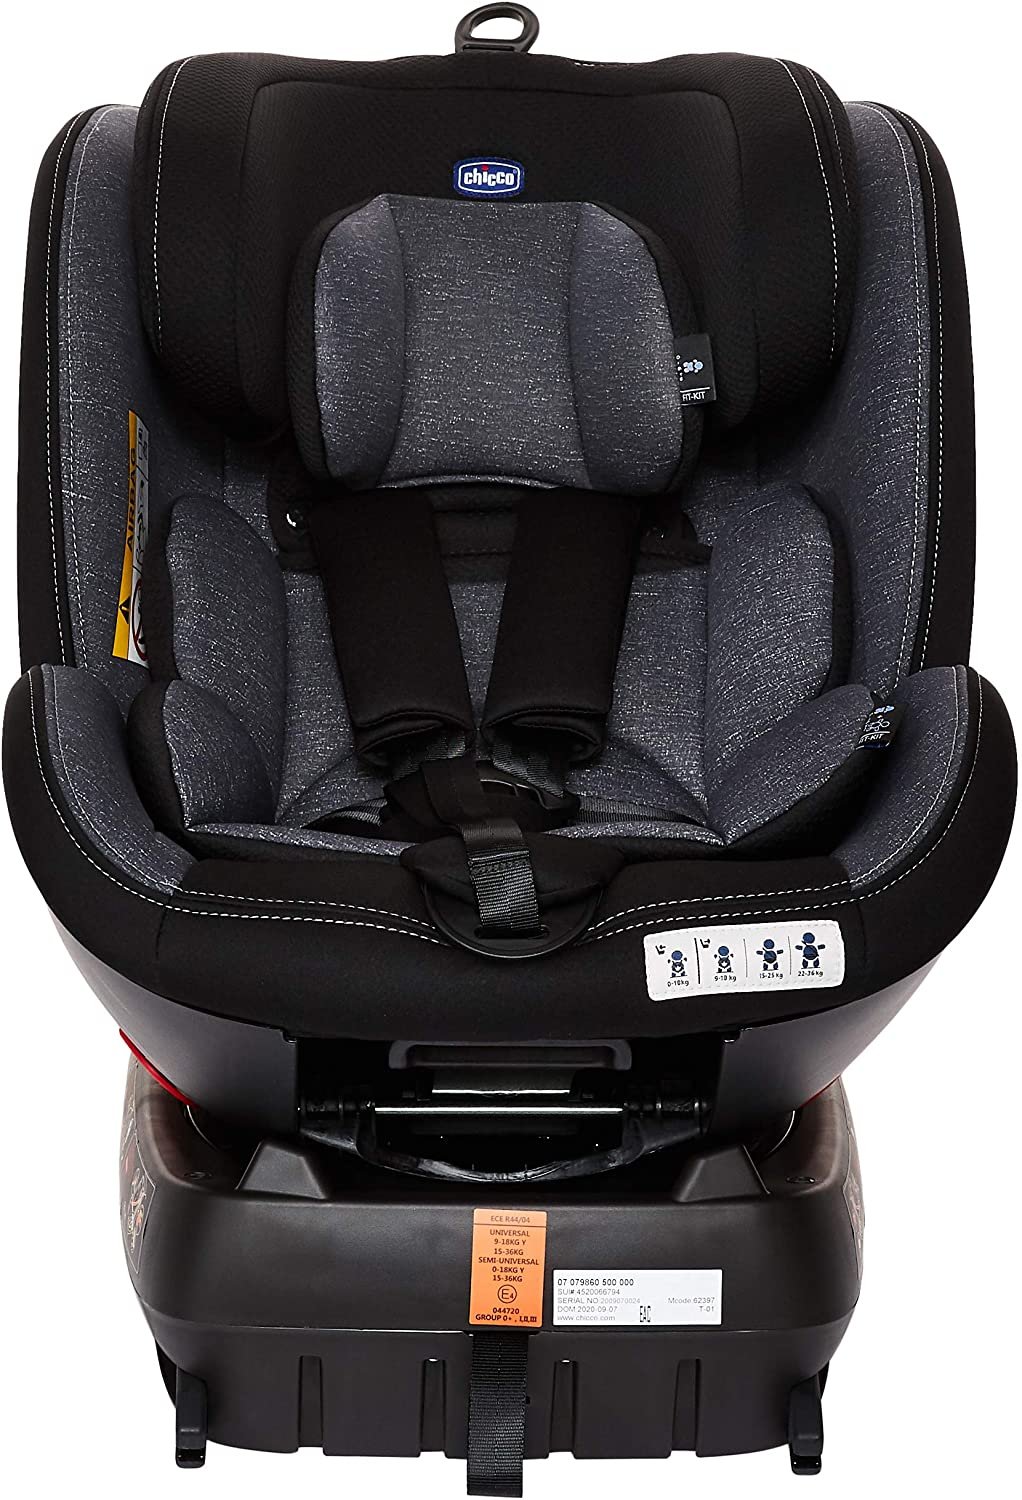 Cadeira Auto Unico Plus Black com Isofix - Chicco 360°